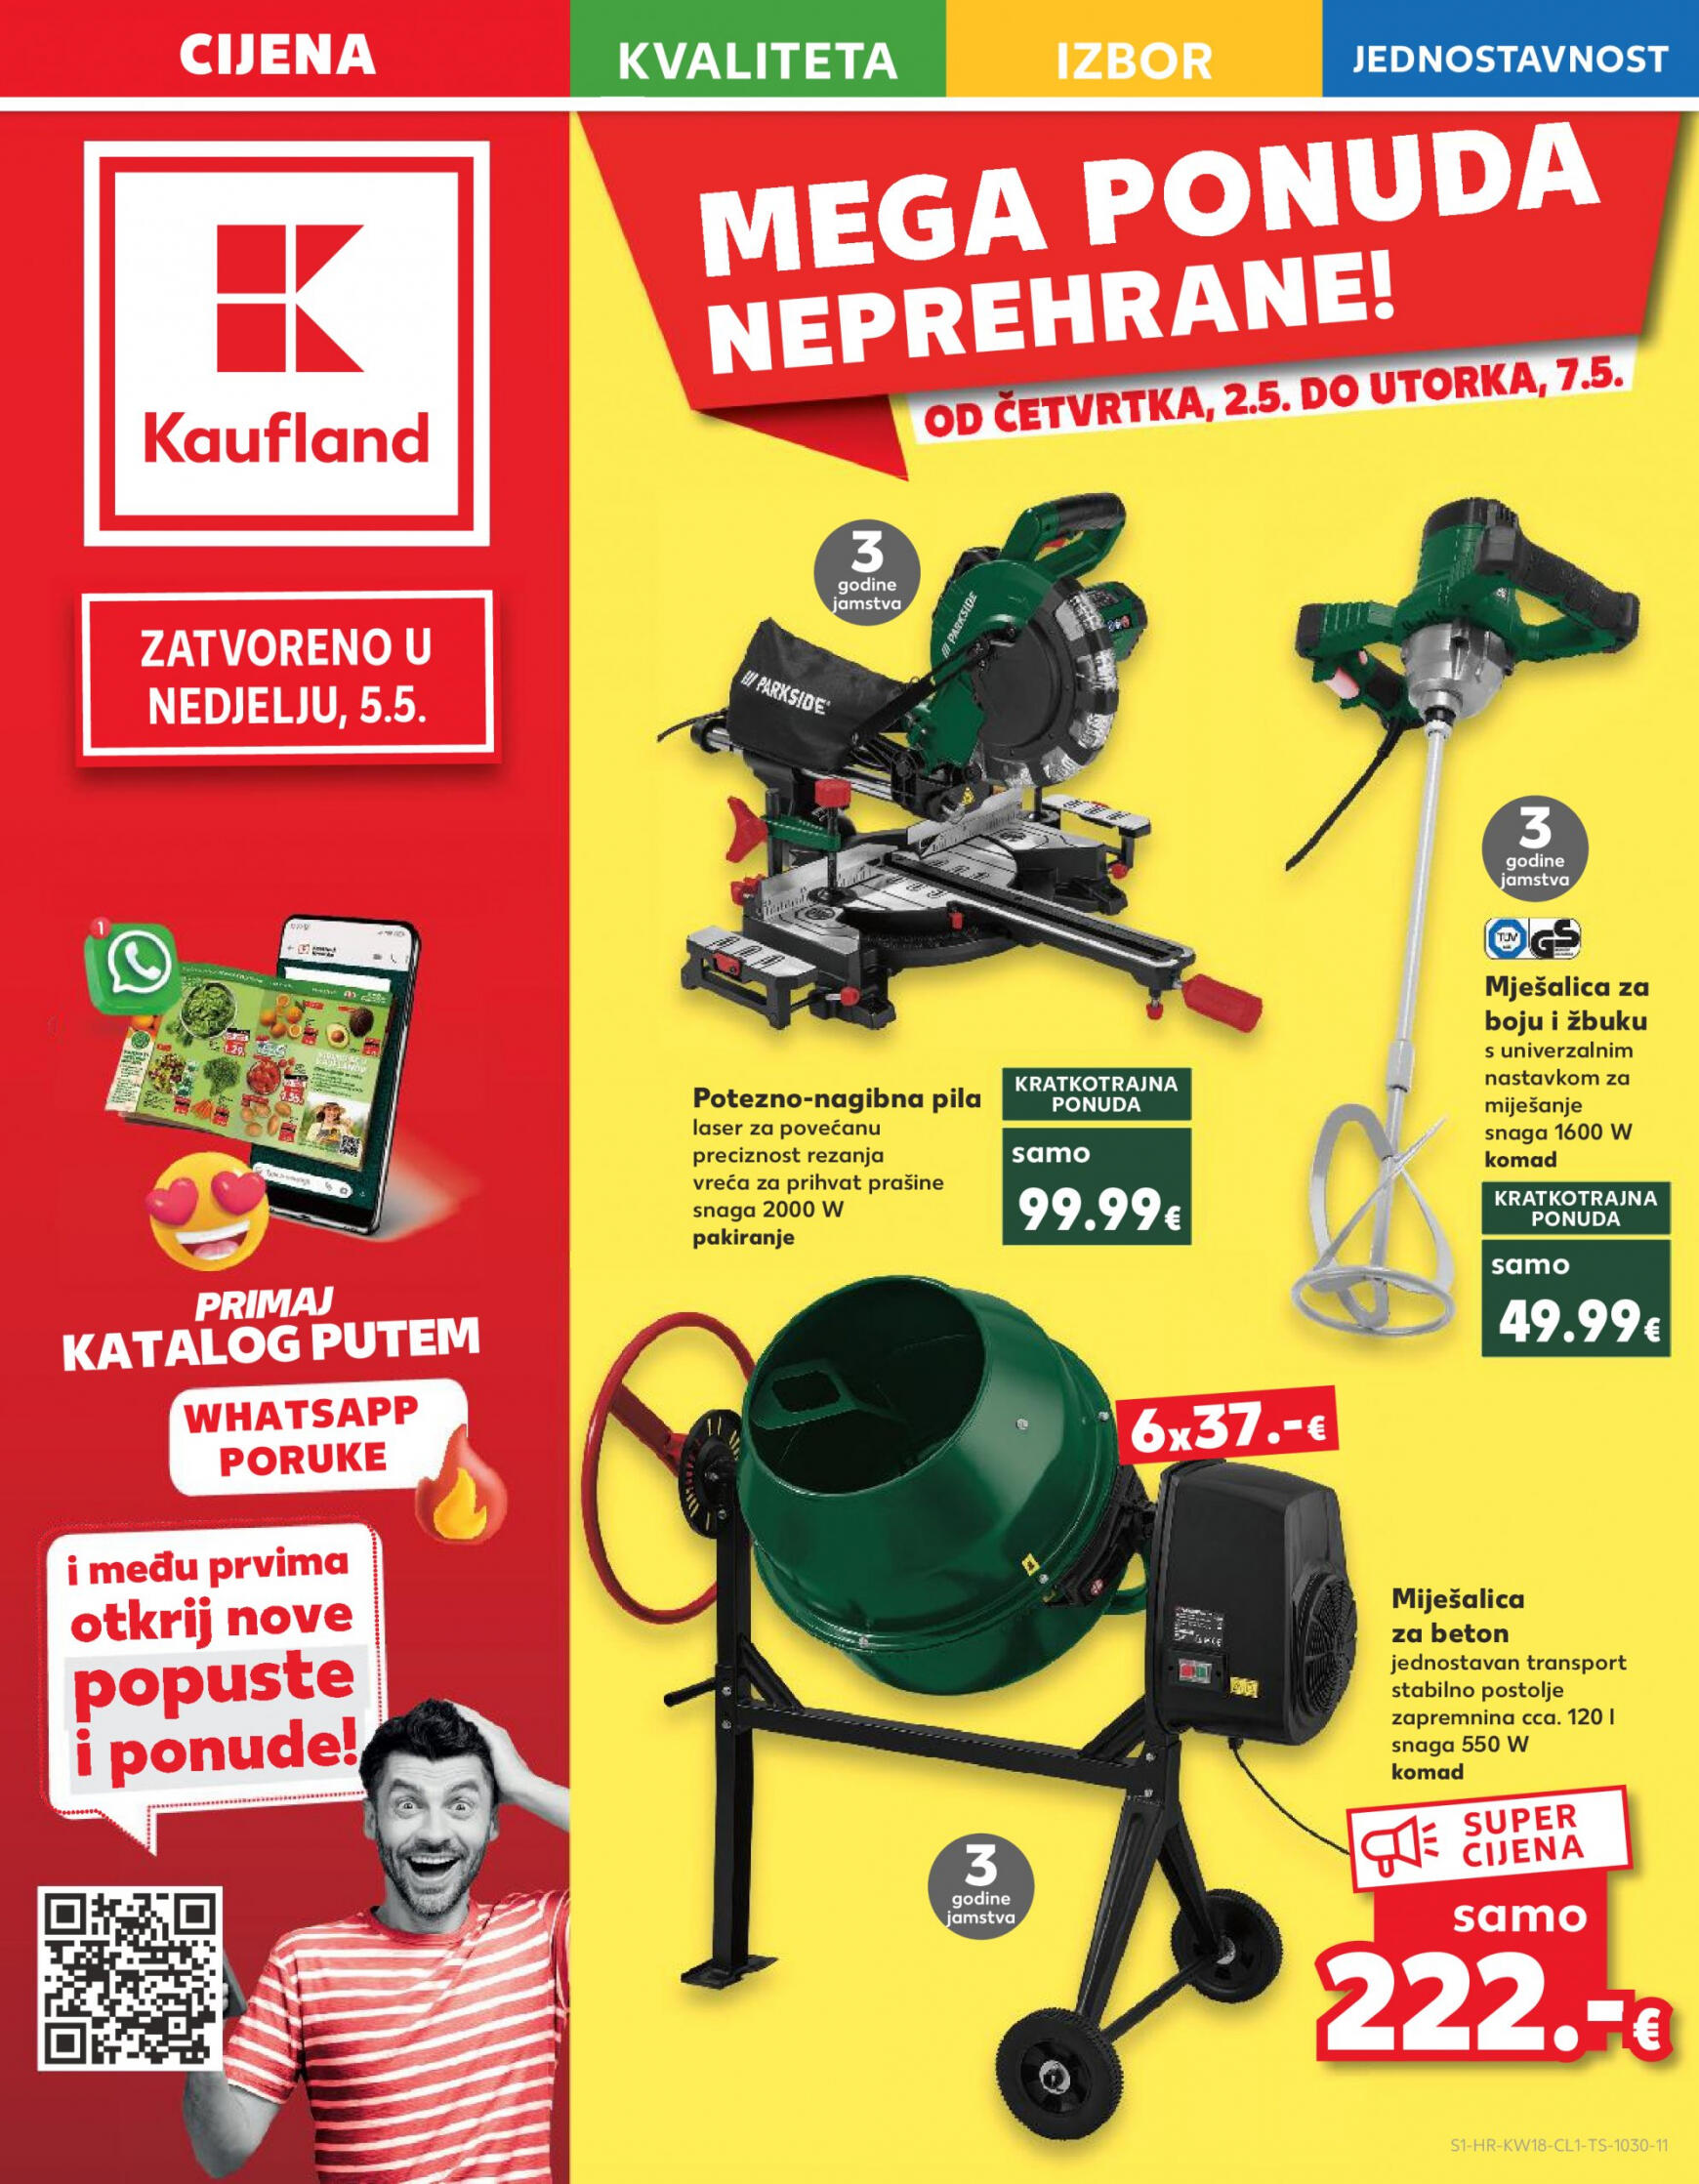 kaufland - Novi katalog Kaufland 02.05. - 07.05. - page: 1